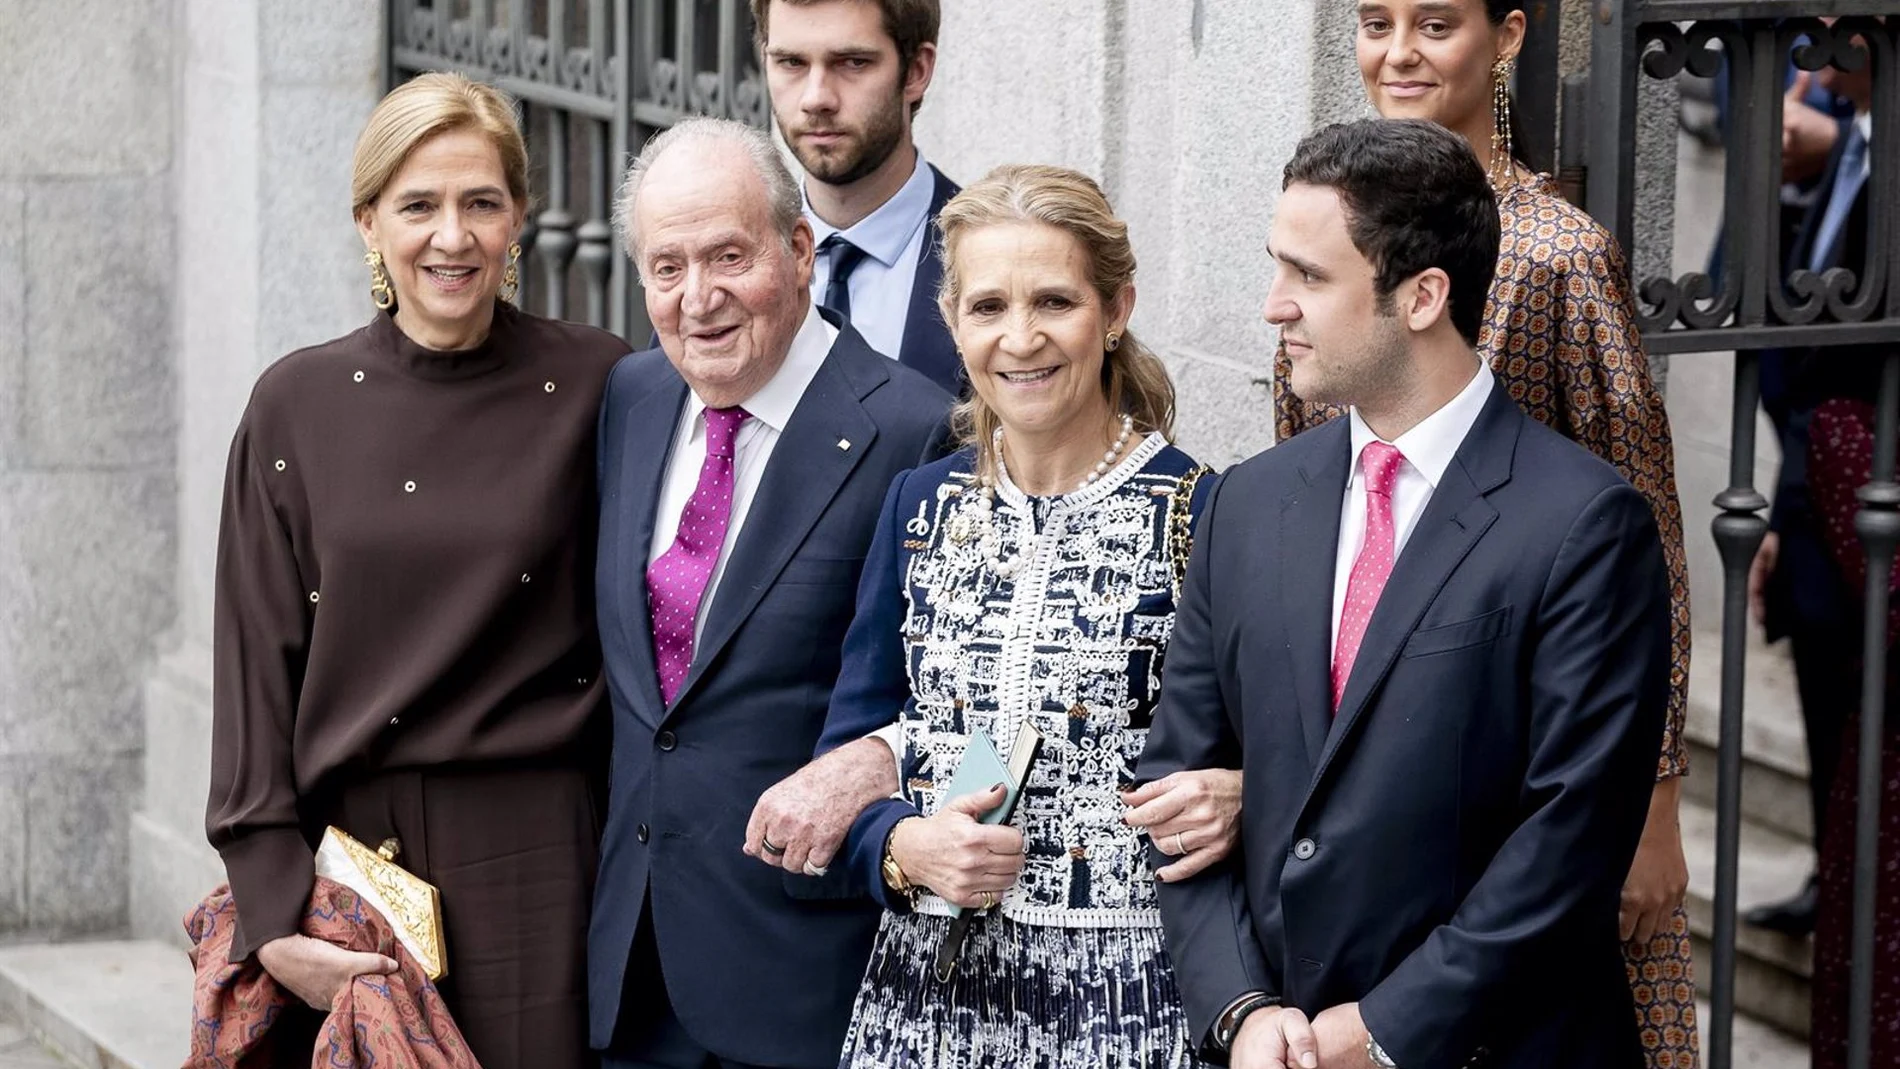 El Rey Juan Carlos I protagoniza una imagen entrañable con sus hijas y nietos